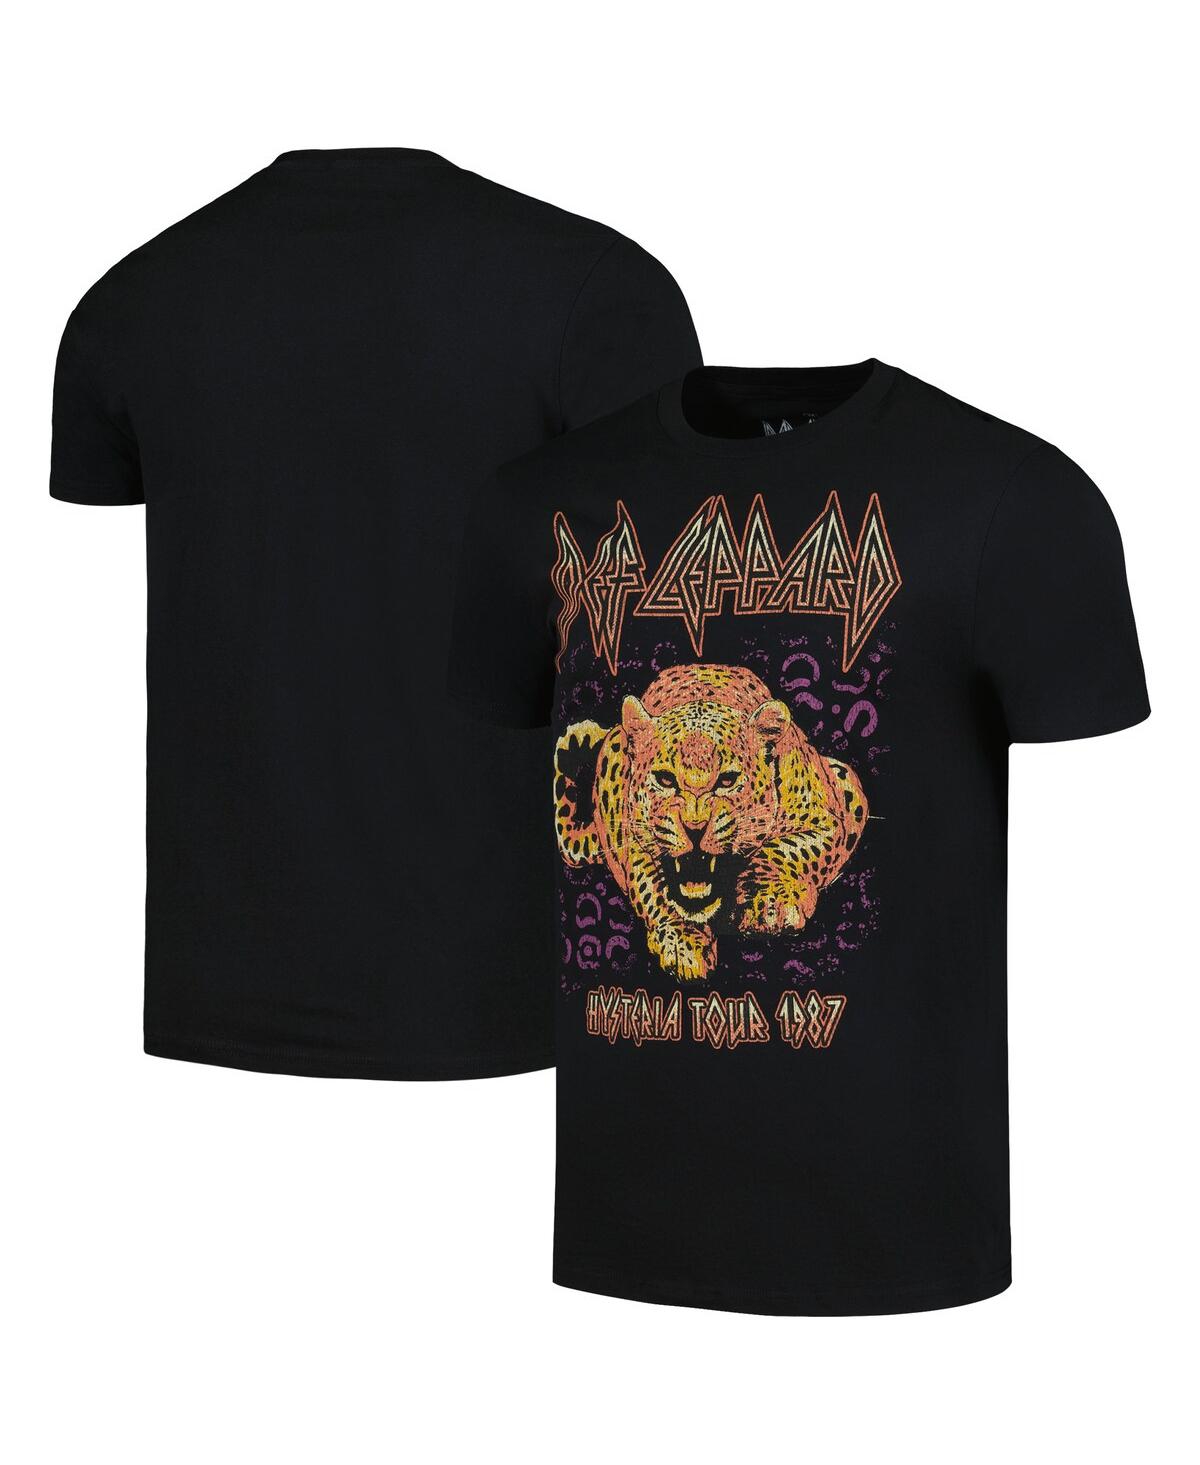 Men's Black Def Leppard Hysteria Tour 1987 Graphic T-shirt - Black